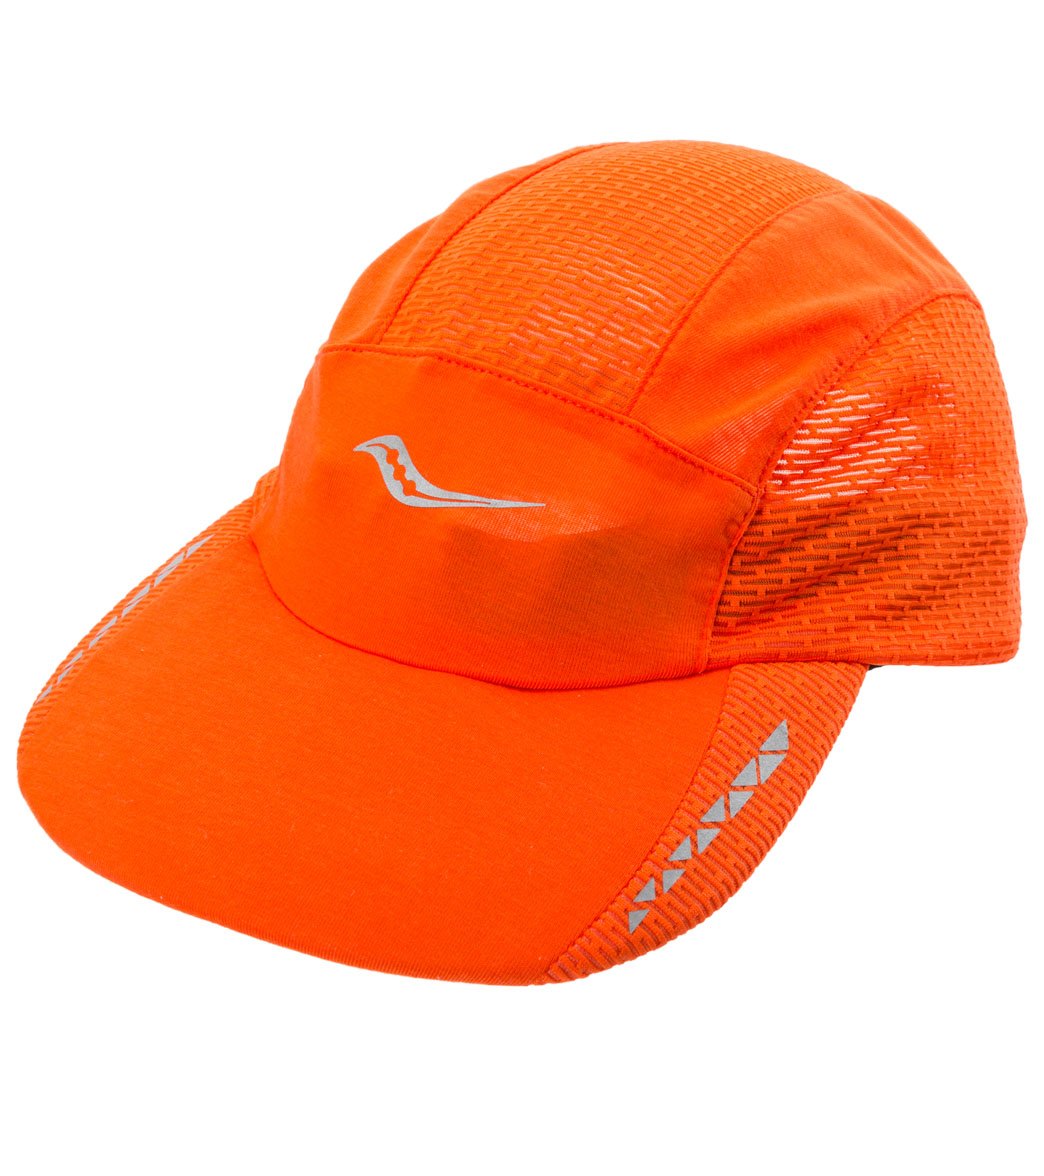 saucony women's running hat